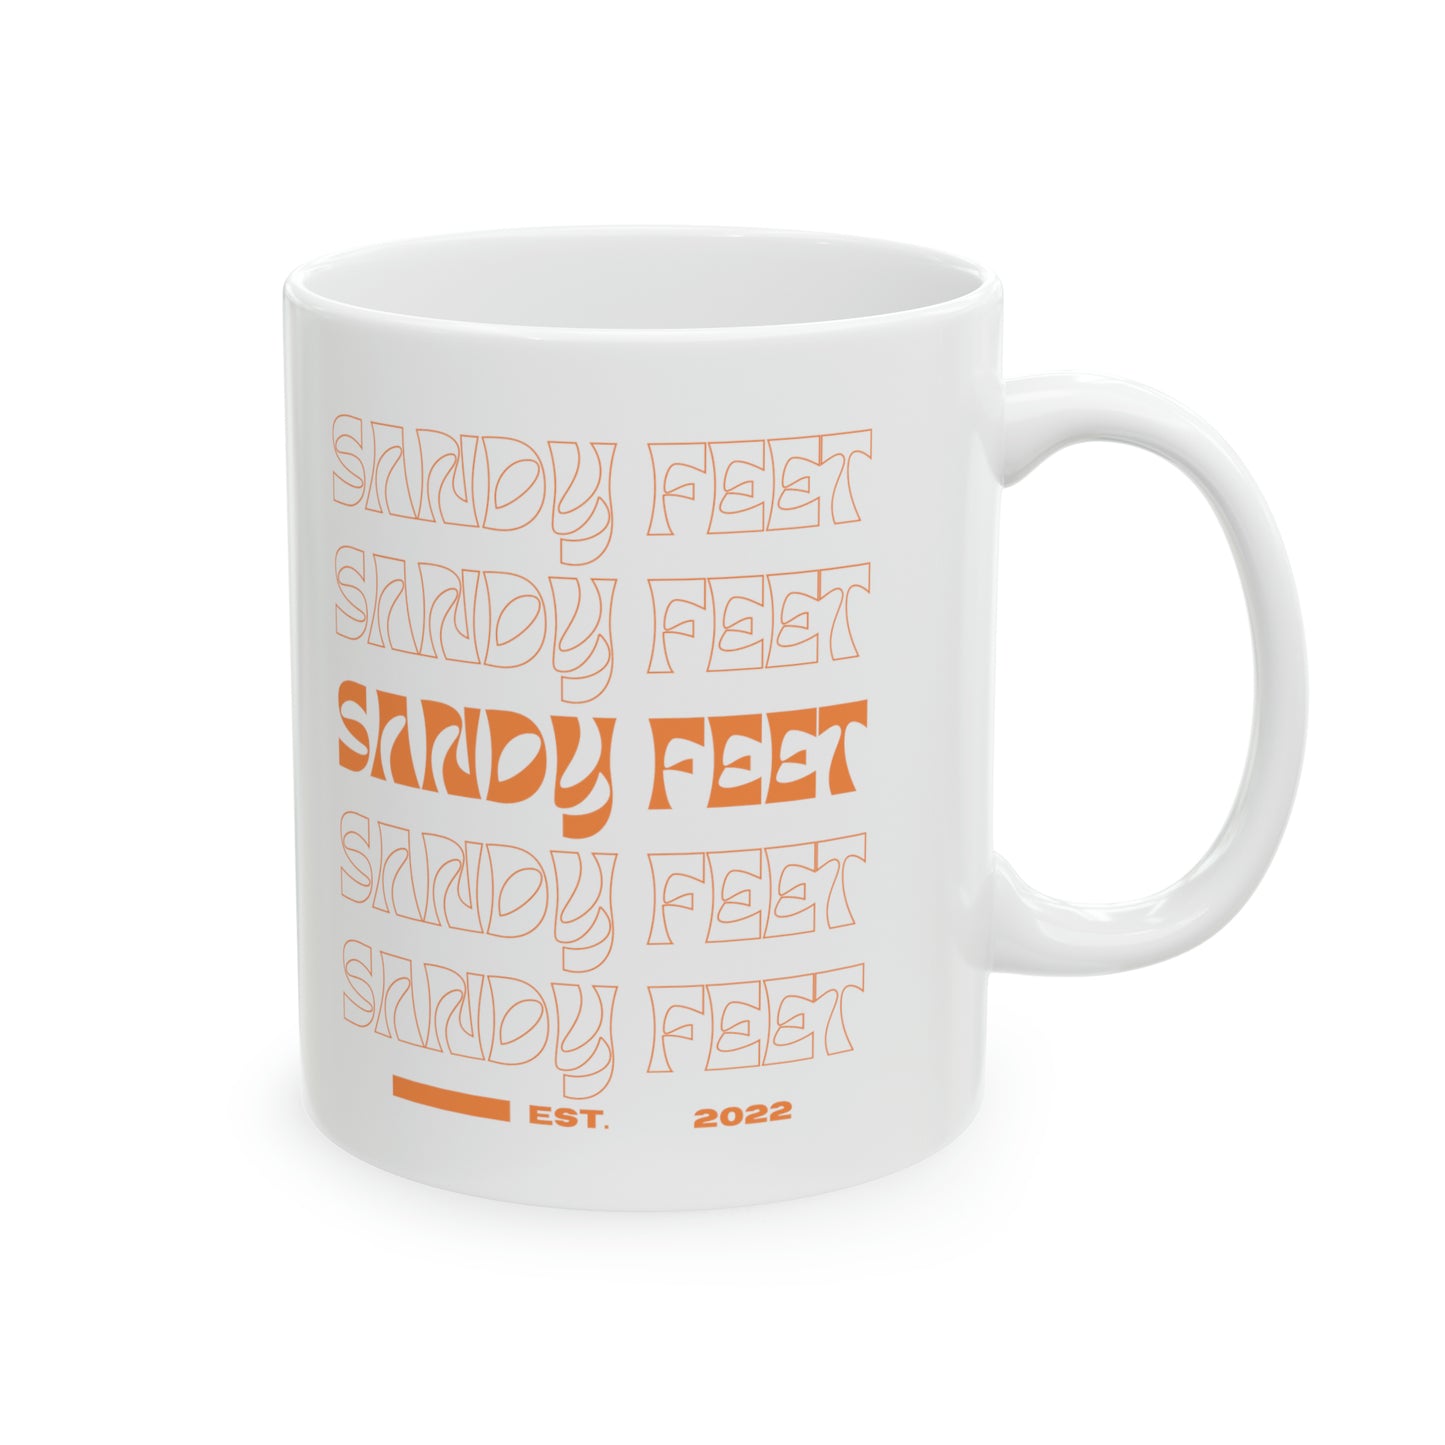 Sandy Feet - Ceramic Mug - 11oz